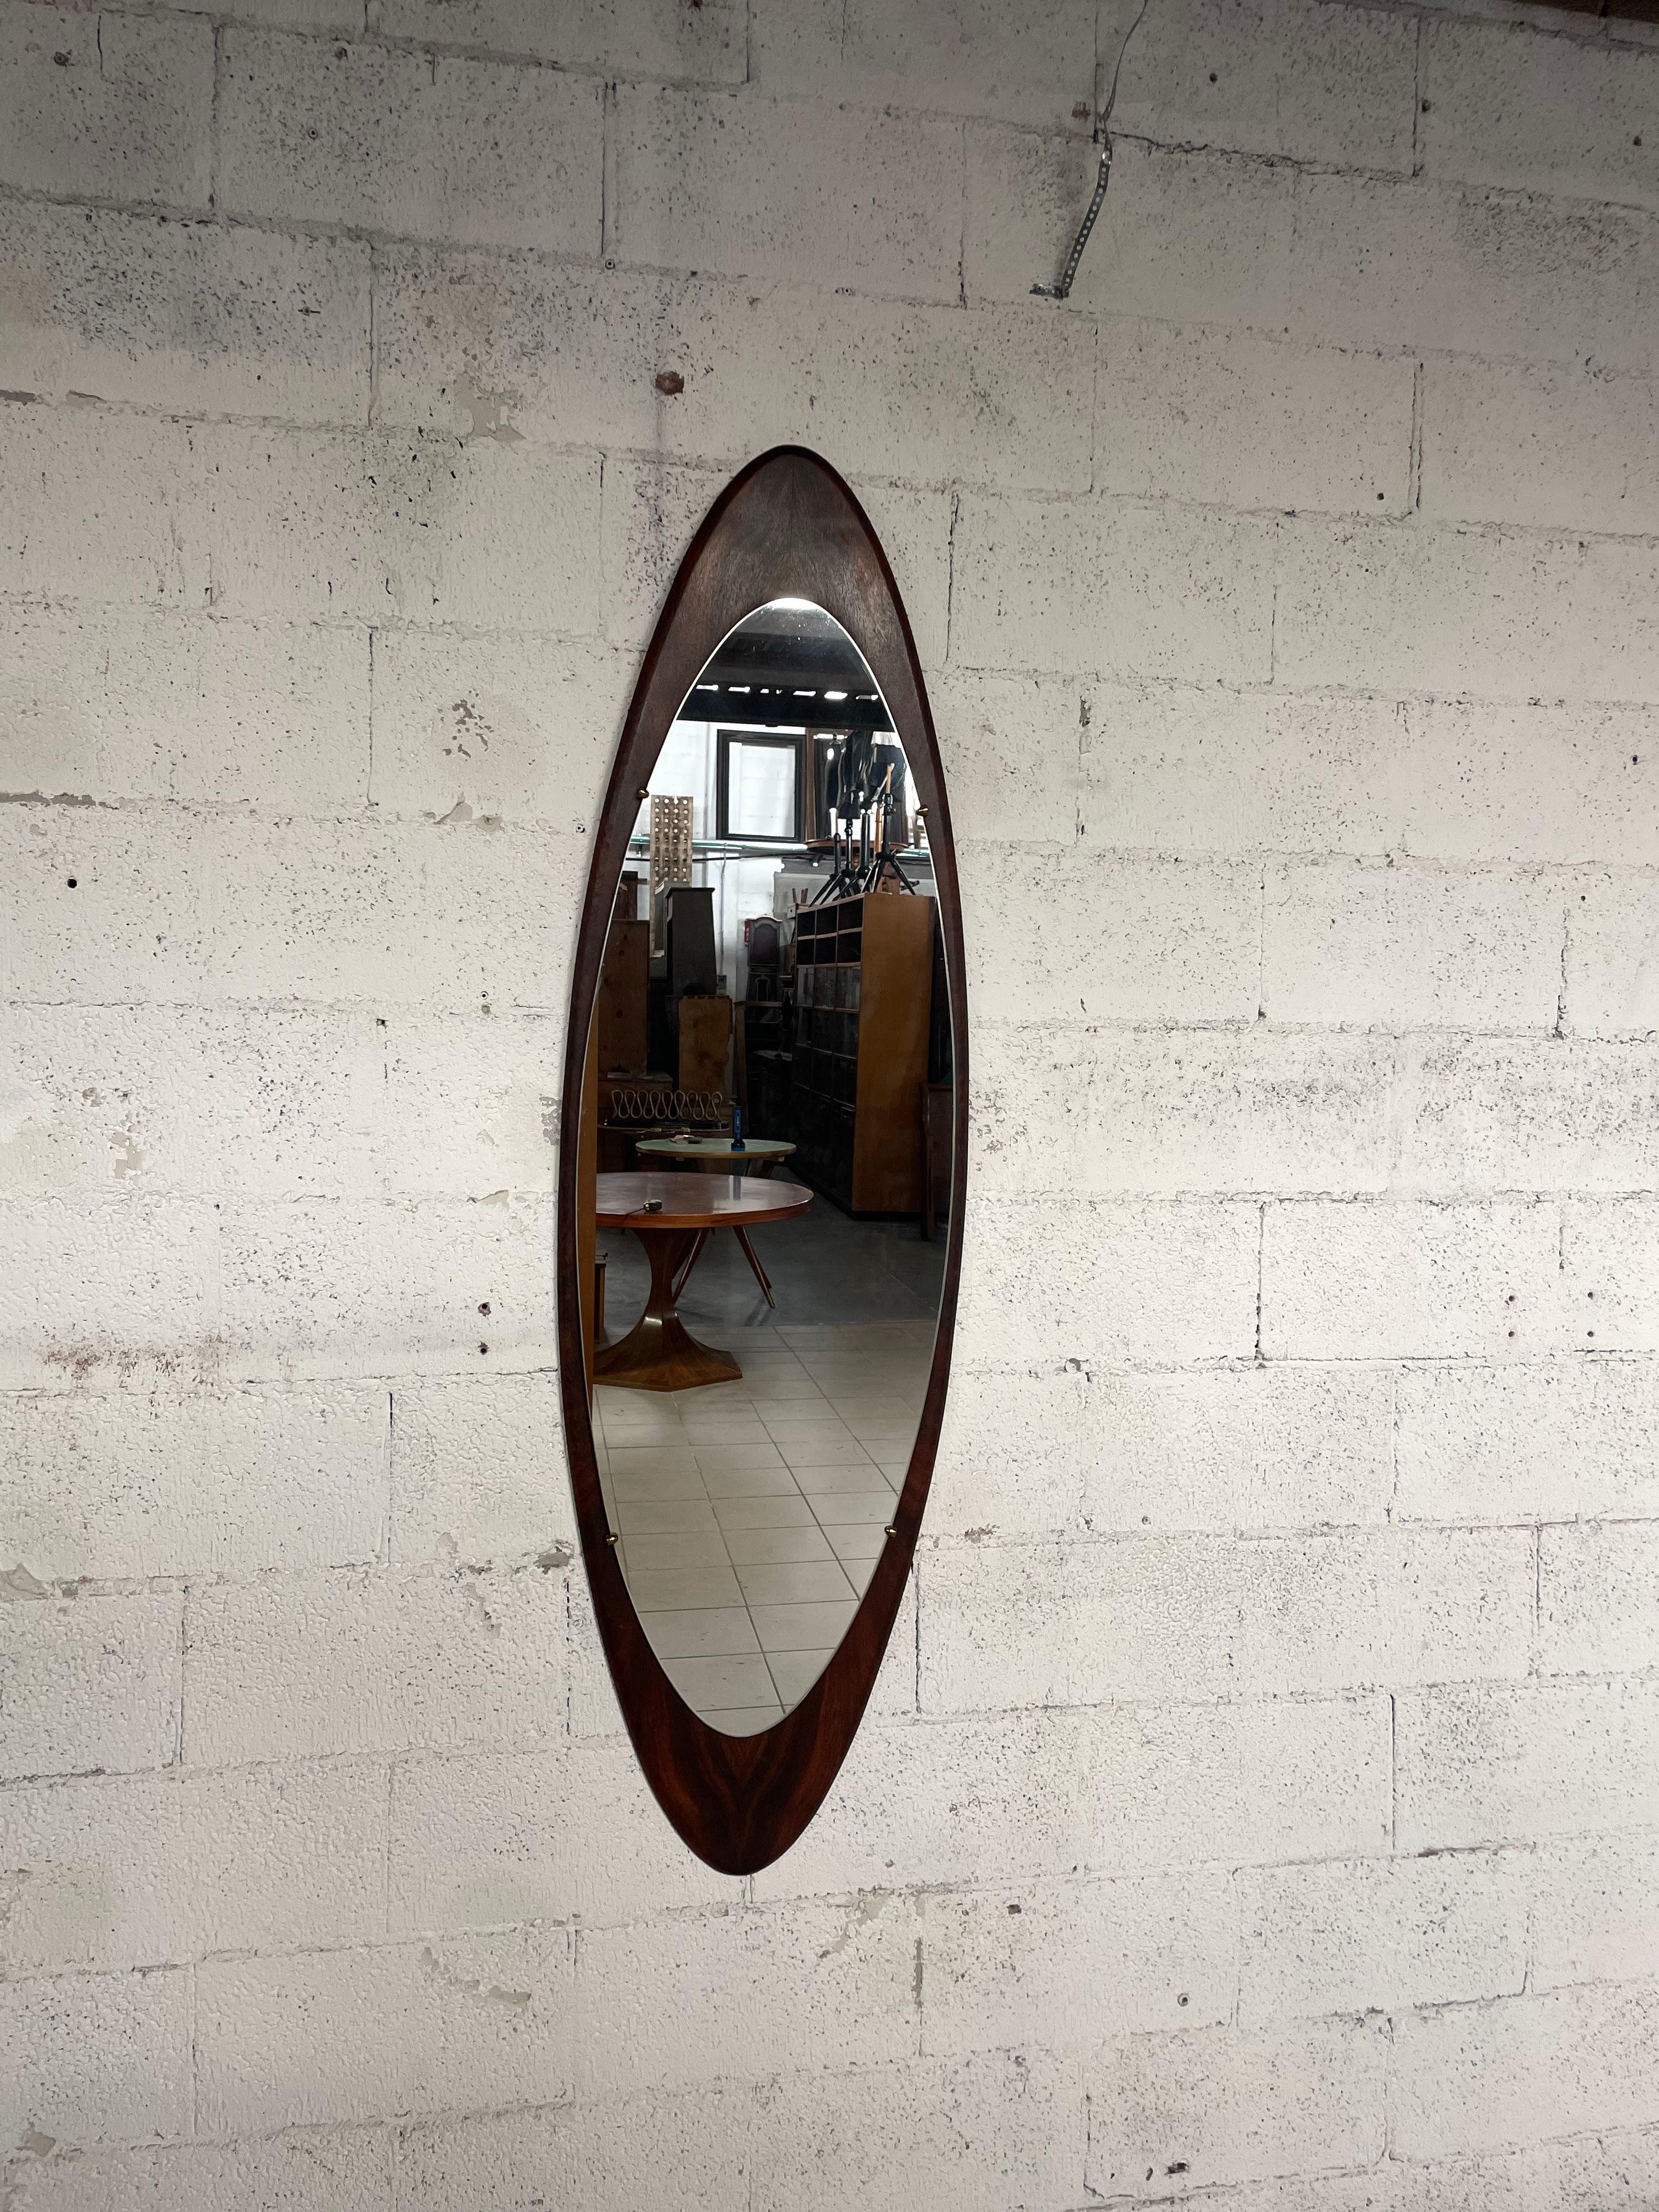 Grand miroir ovale des années 1960 de fabrication italienne.

Cadre en bois de rose et base en miroir, les détails en laiton confèrent de l'élégance à ce meuble.